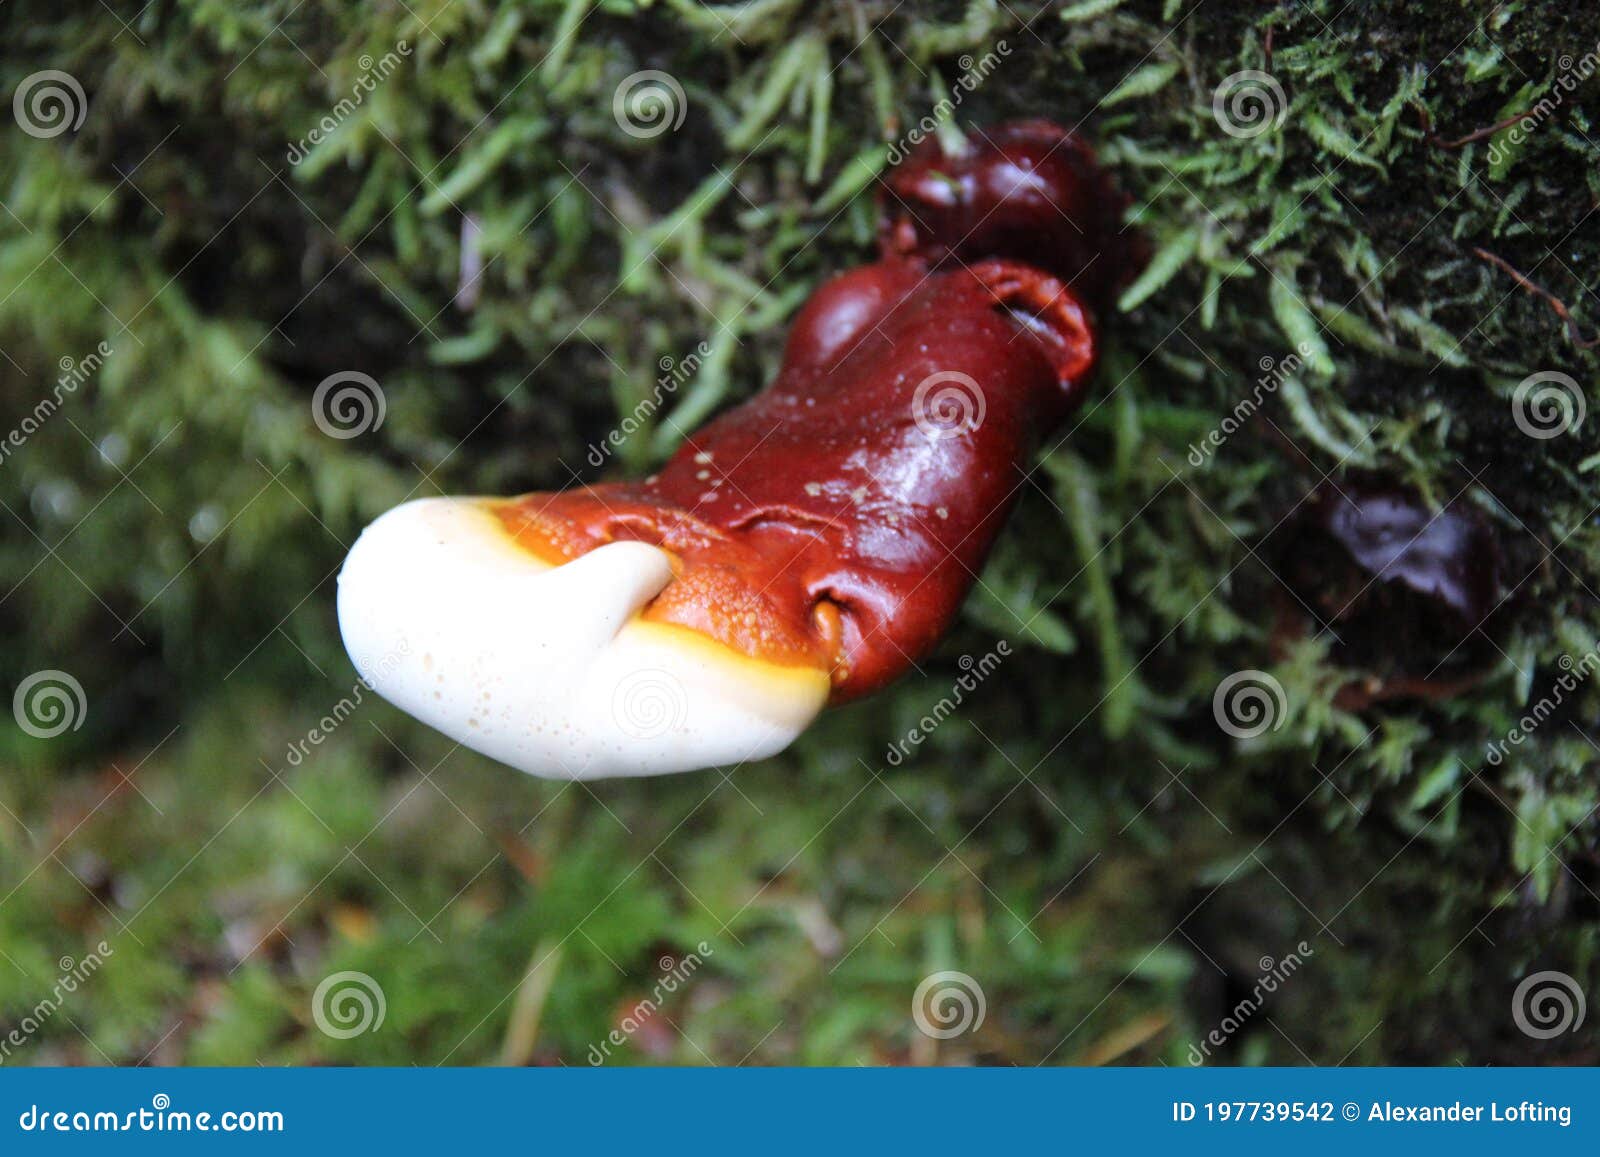 reishi mushroom in antler phase